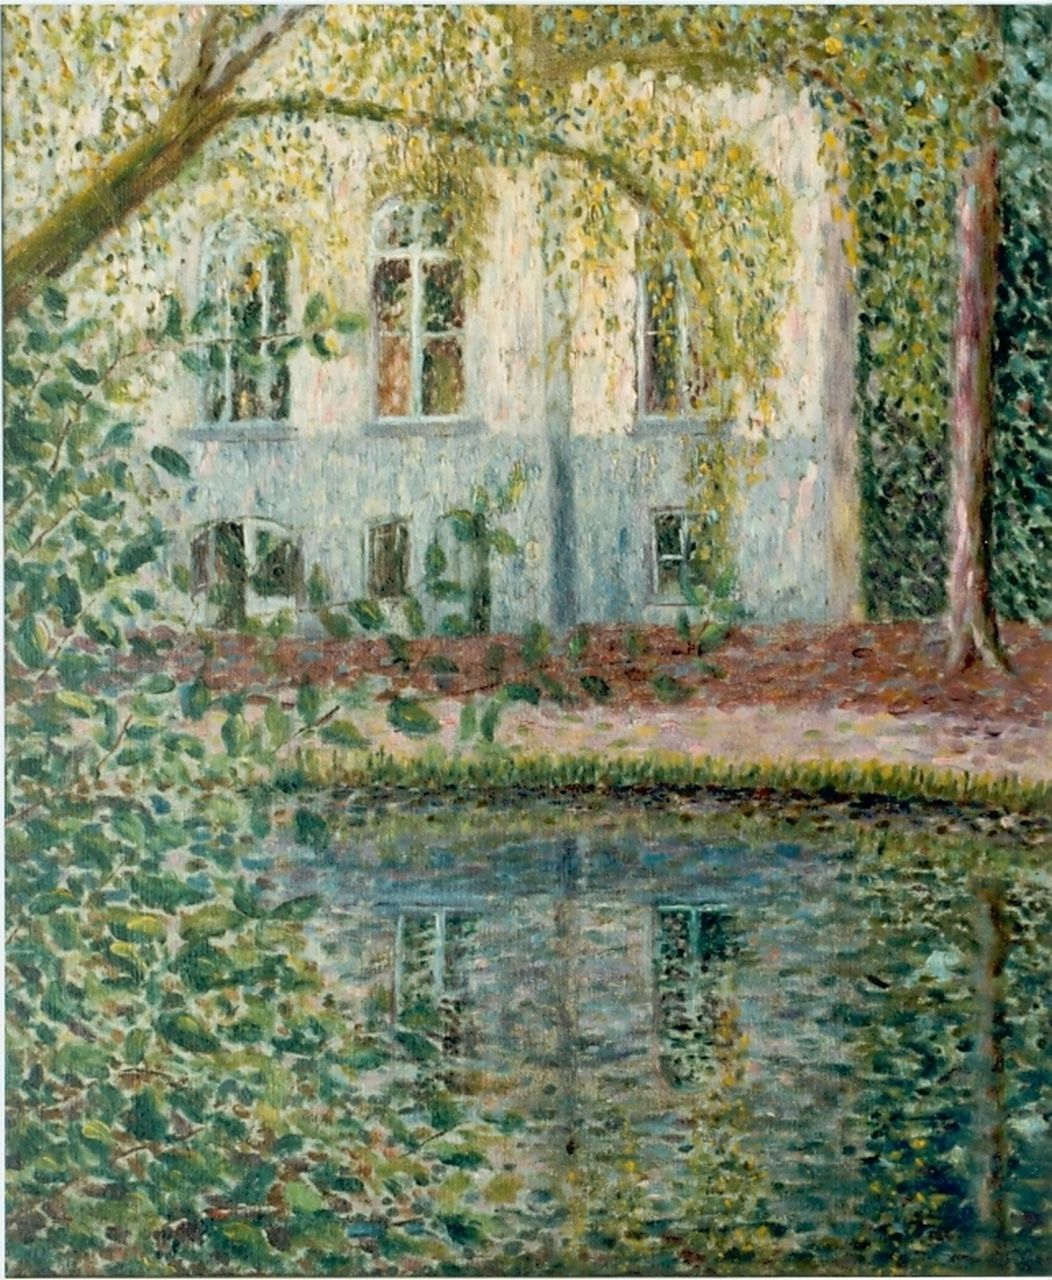 Niekerk M.J.  | 'Maurits' Joseph Niekerk, A view of a house, oil on canvas 46.0 x 38.0 cm